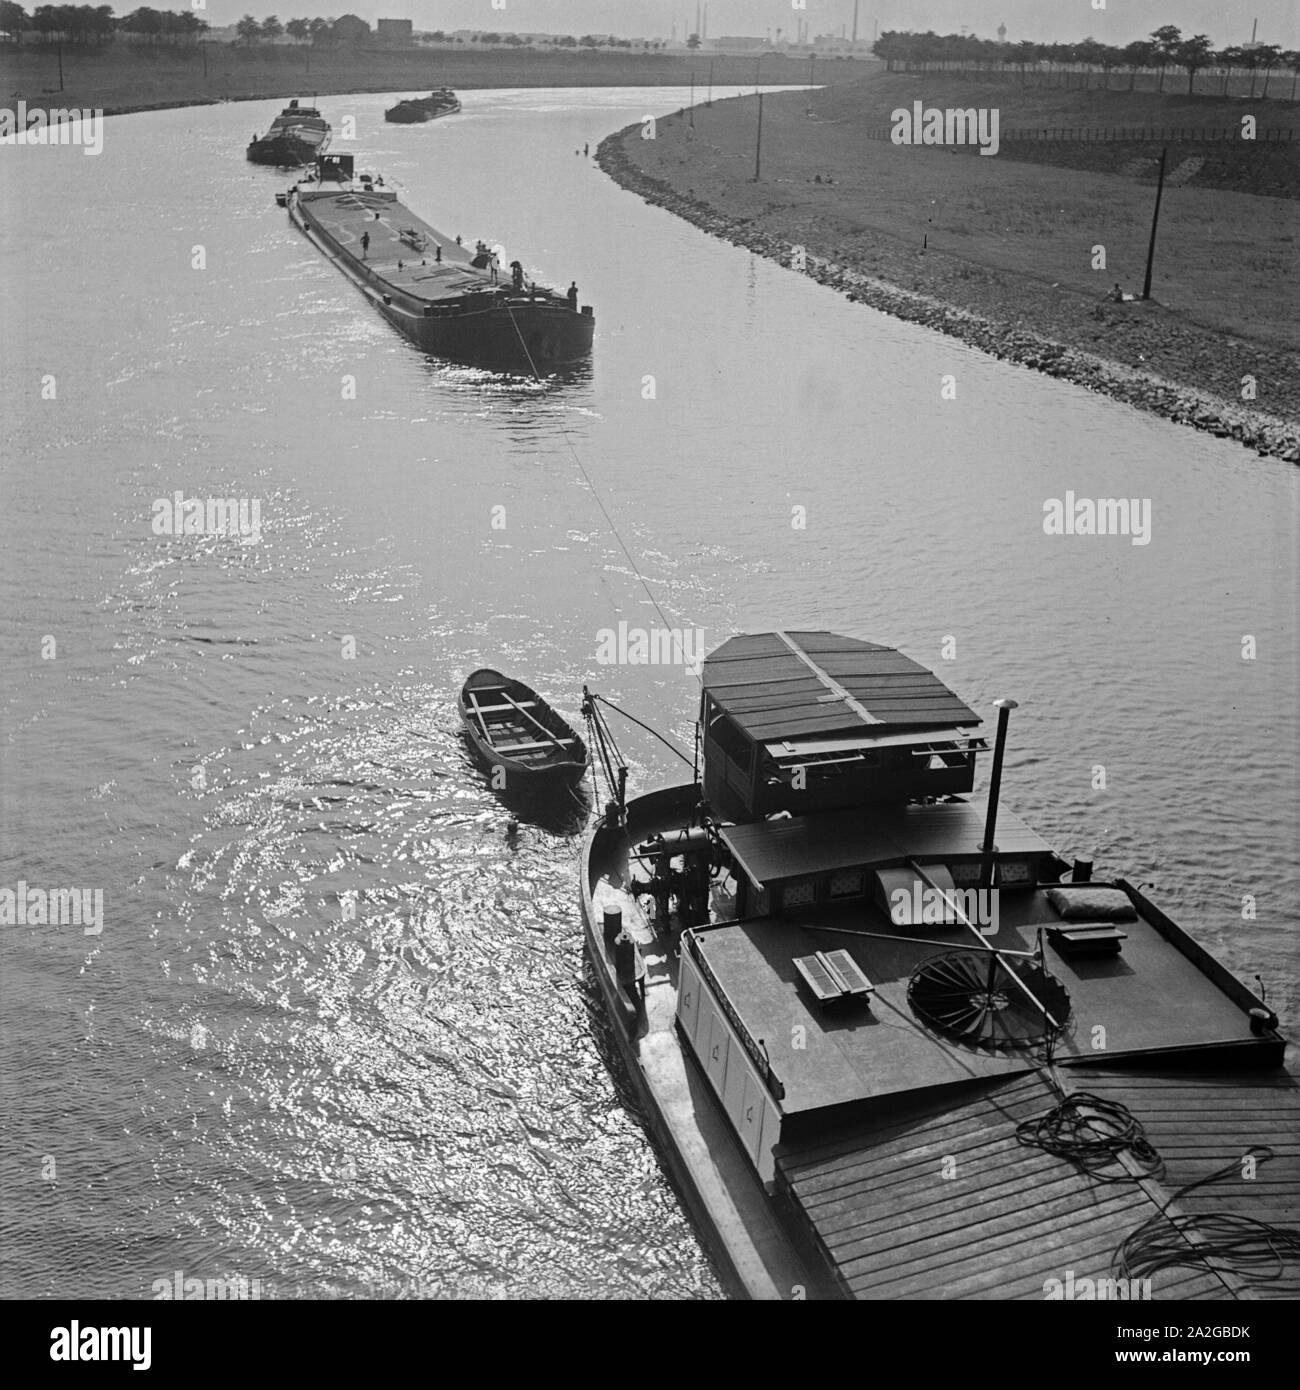 Schlepper auf dem Rhei bei Duisburg, Deutschland 1930er Jahre. Towboats sul fiume Reno vicino a Duisburg, Germania 1930s. Foto Stock